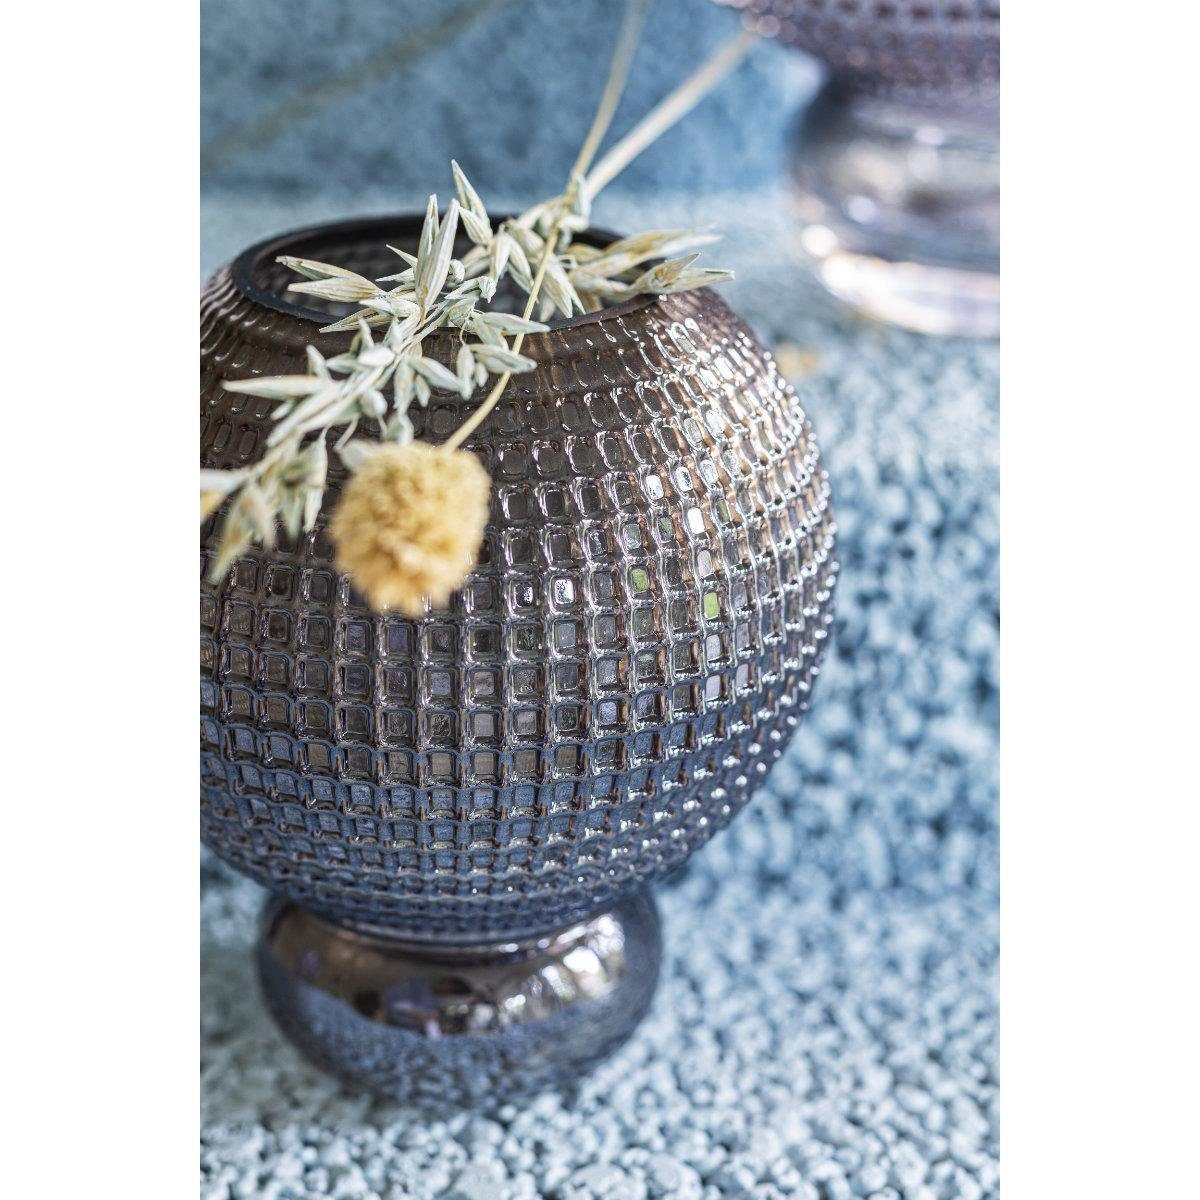 Specktrum Savanna (Small) Clear Dekovase Vase